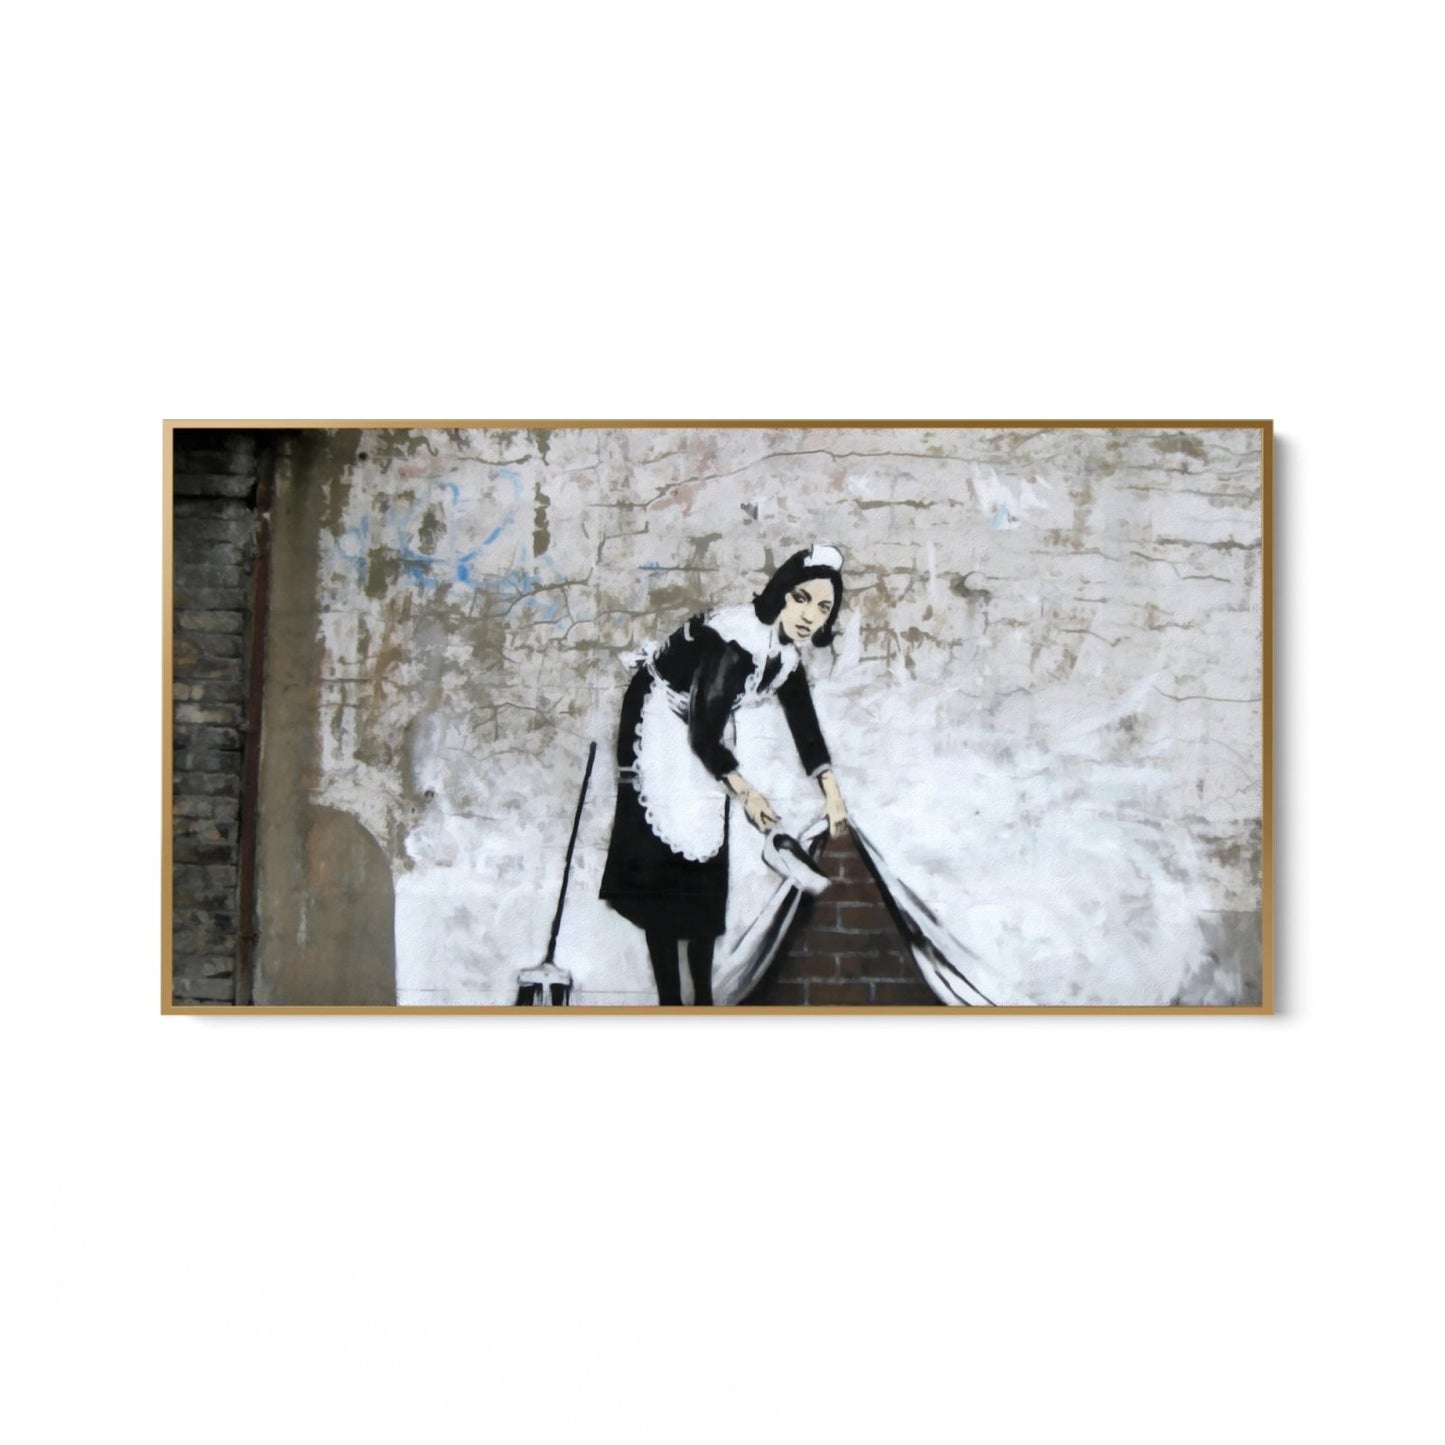 Nušluokite jį po kilimu – Londra, Banksy